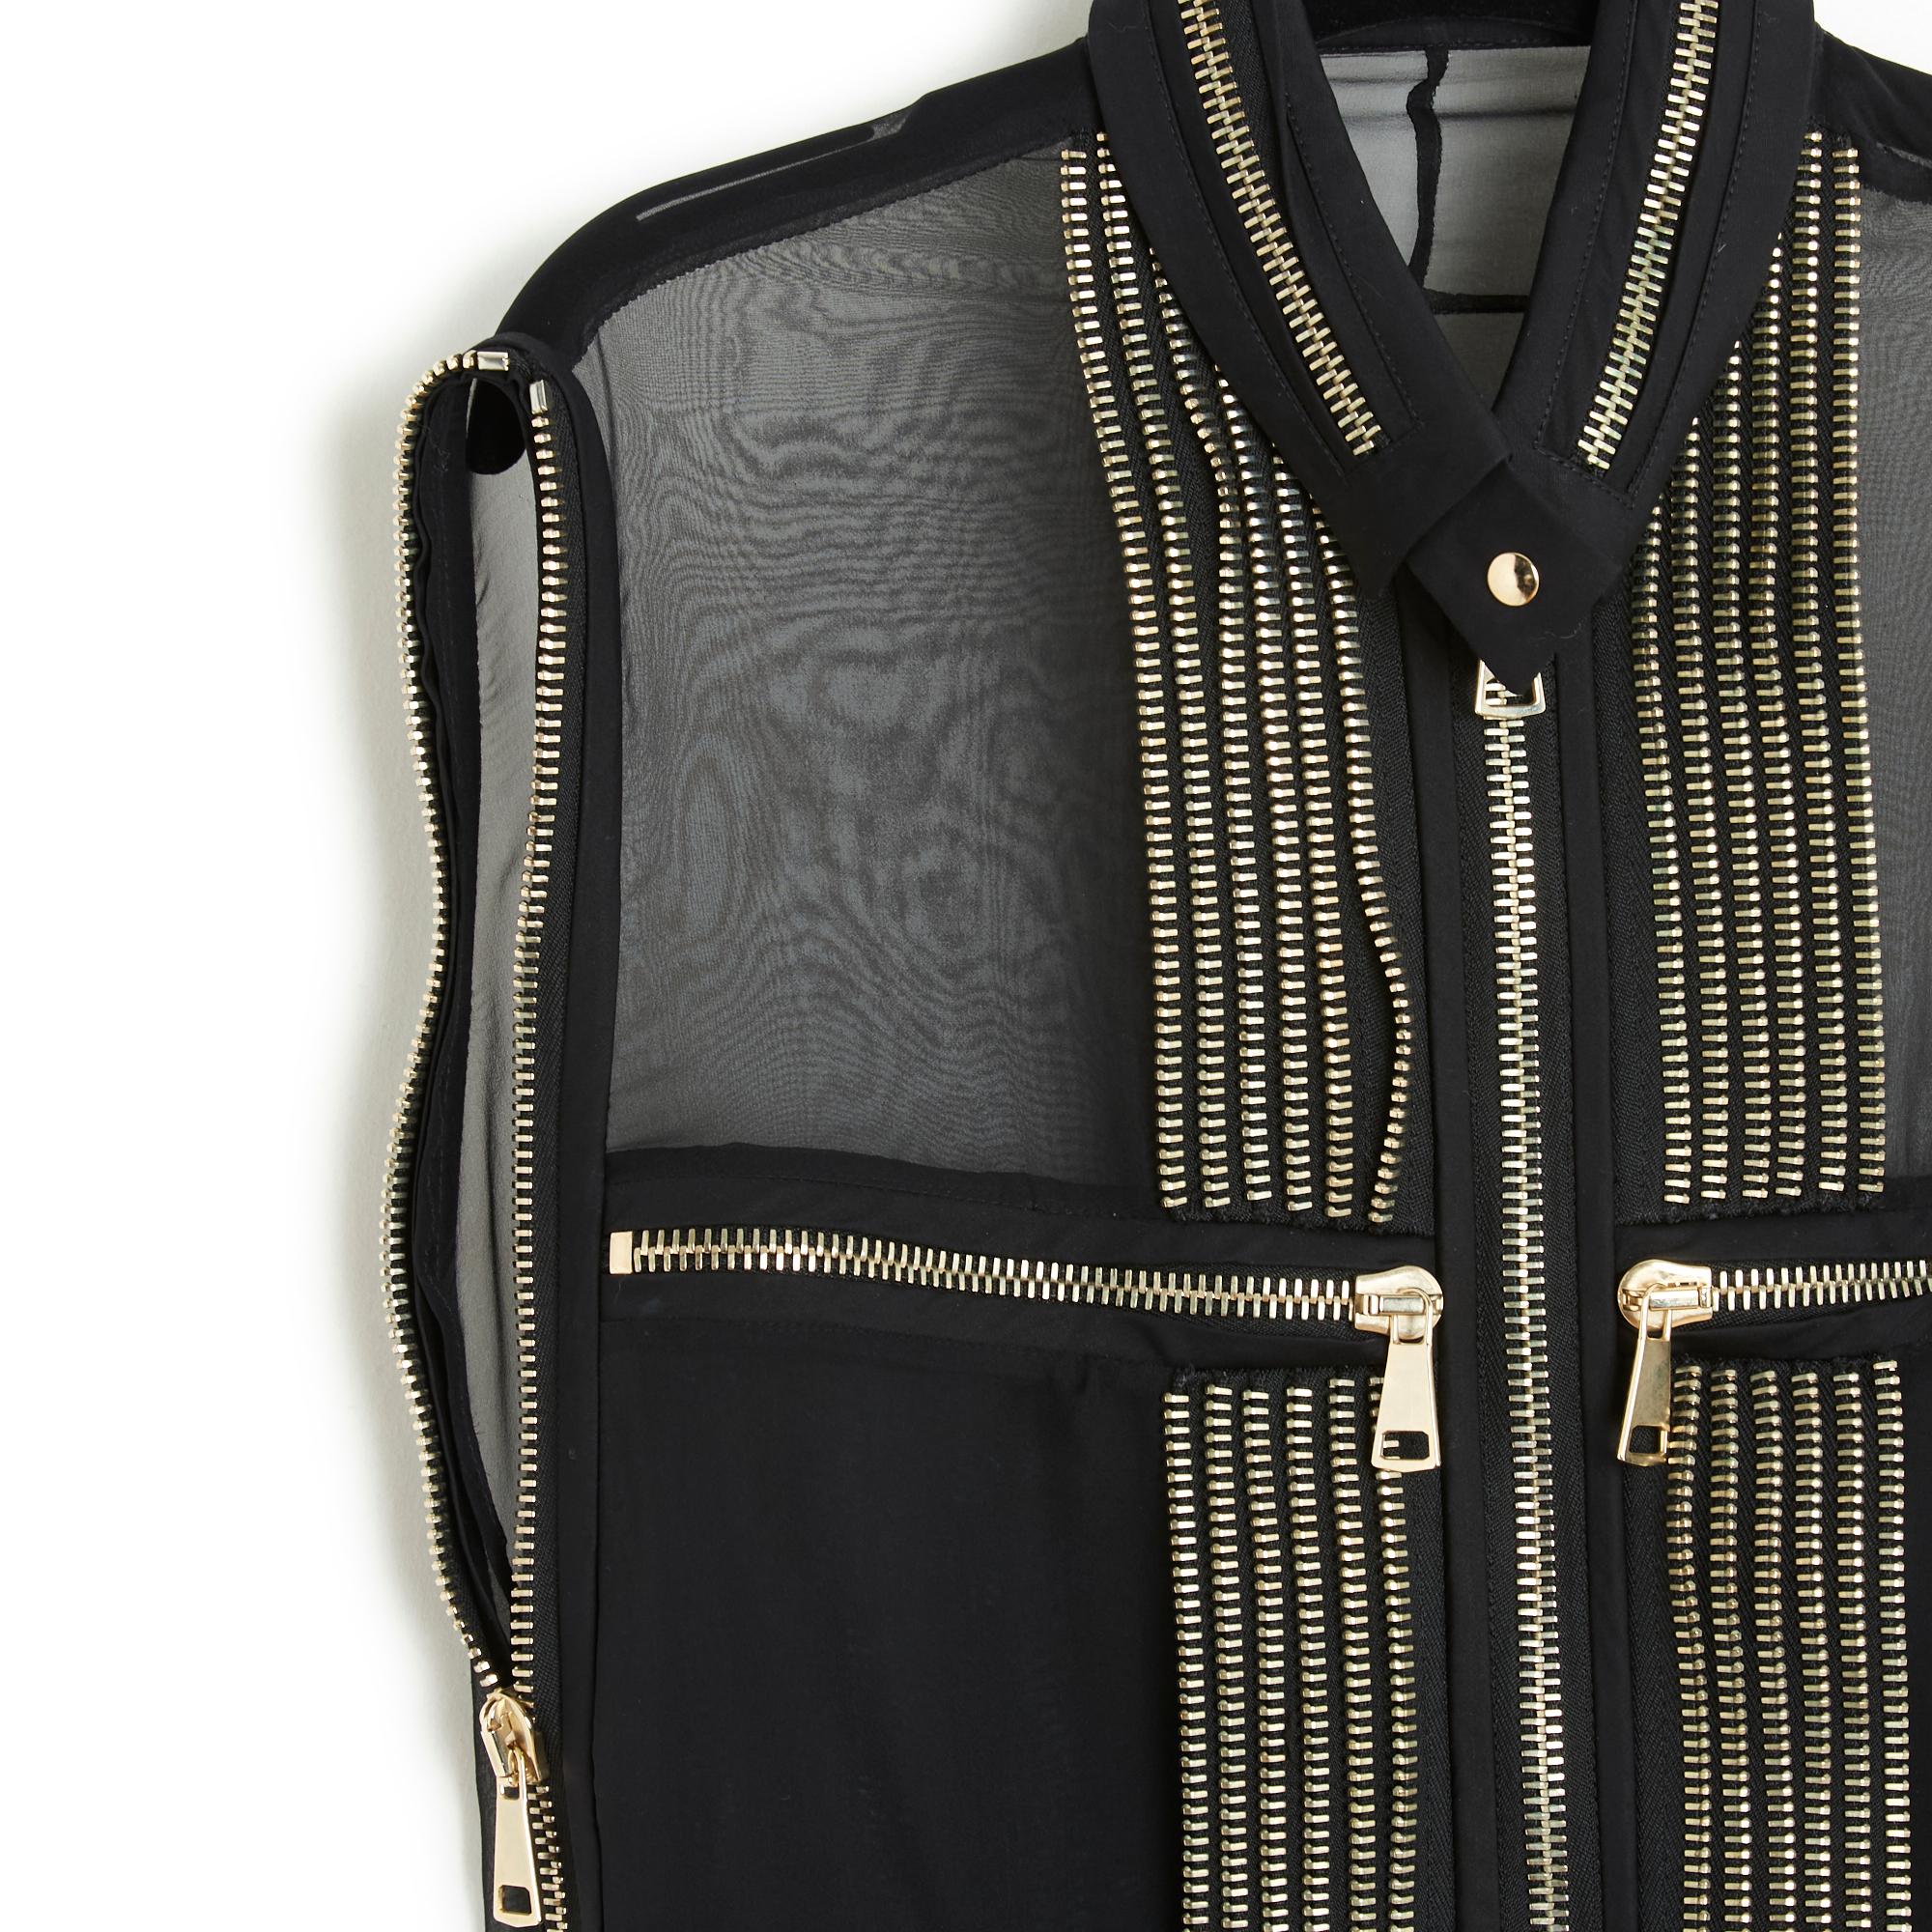 Givenchy Oberteil SS 2011 Kollektion (von Riccardo Tisci) aus schwarzem Seidenchiffon, bestickt mit silbernen Metallreißverschlüssen, kleiner hoher Kragen mit Druckknopfverschluss, langer Frontreißverschluss, 2 Reißverschlusstaschen auf der Brust